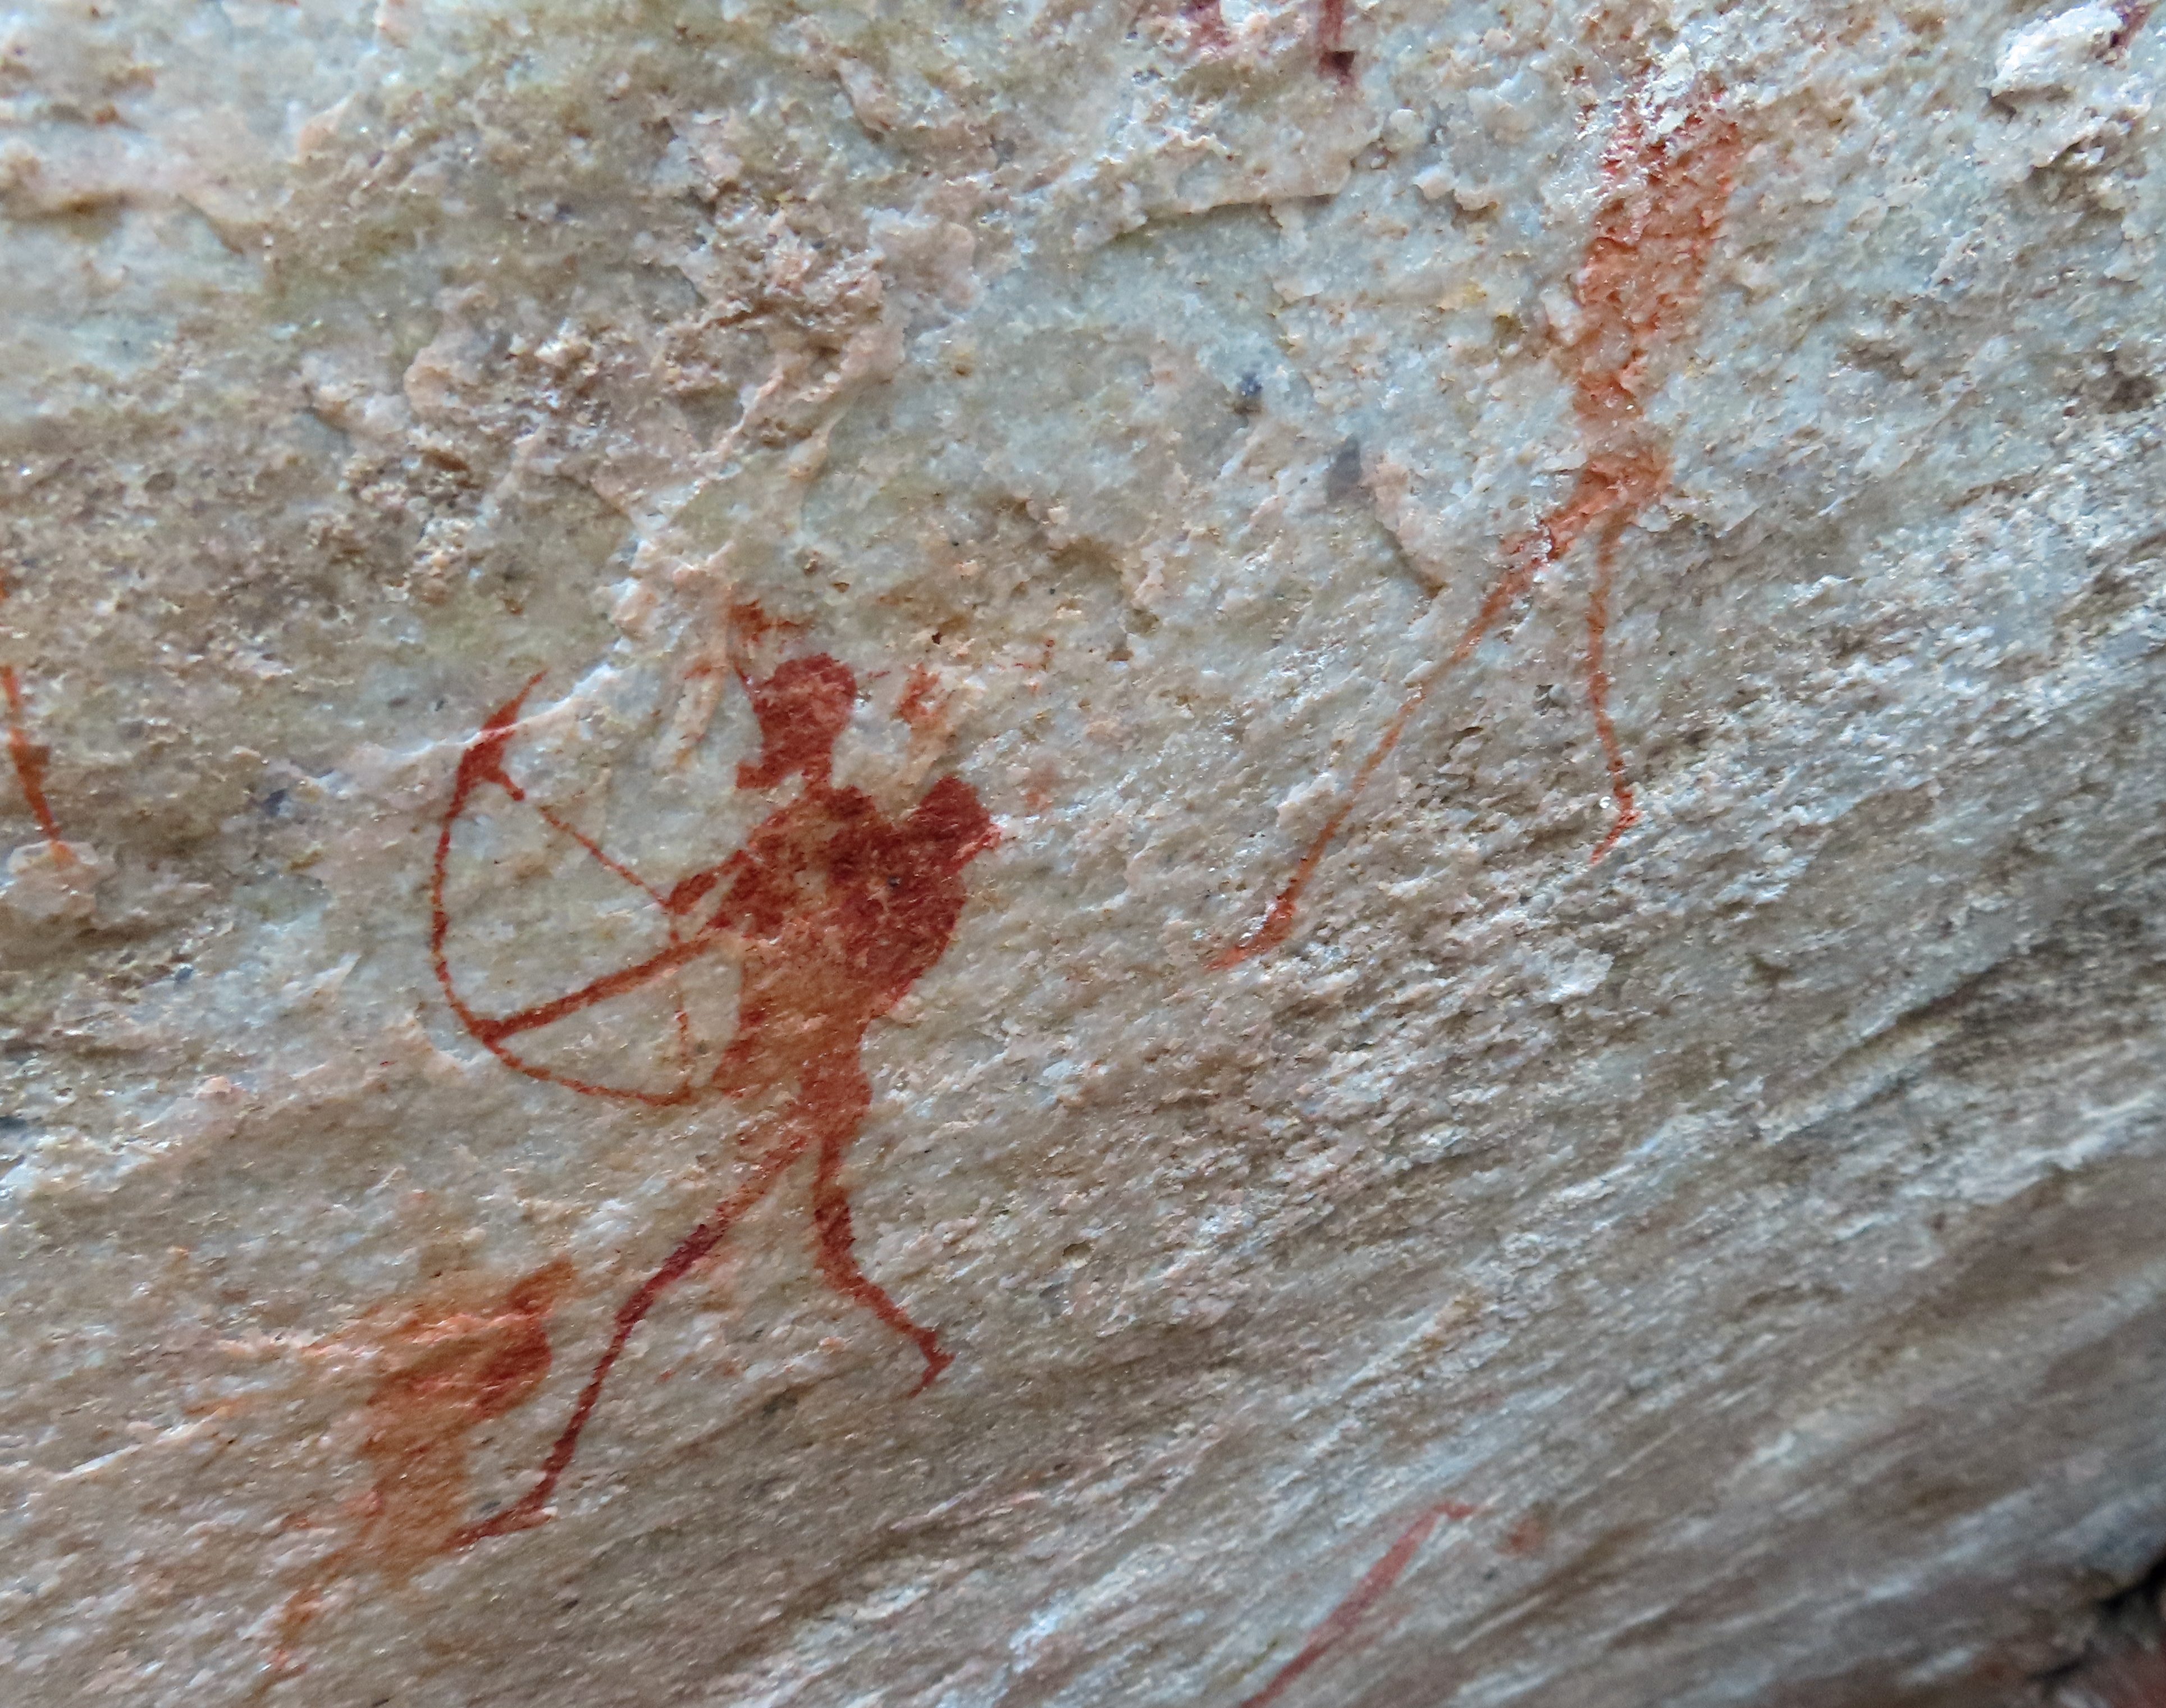 Bushman rock paintings by the Brandewyn River. 